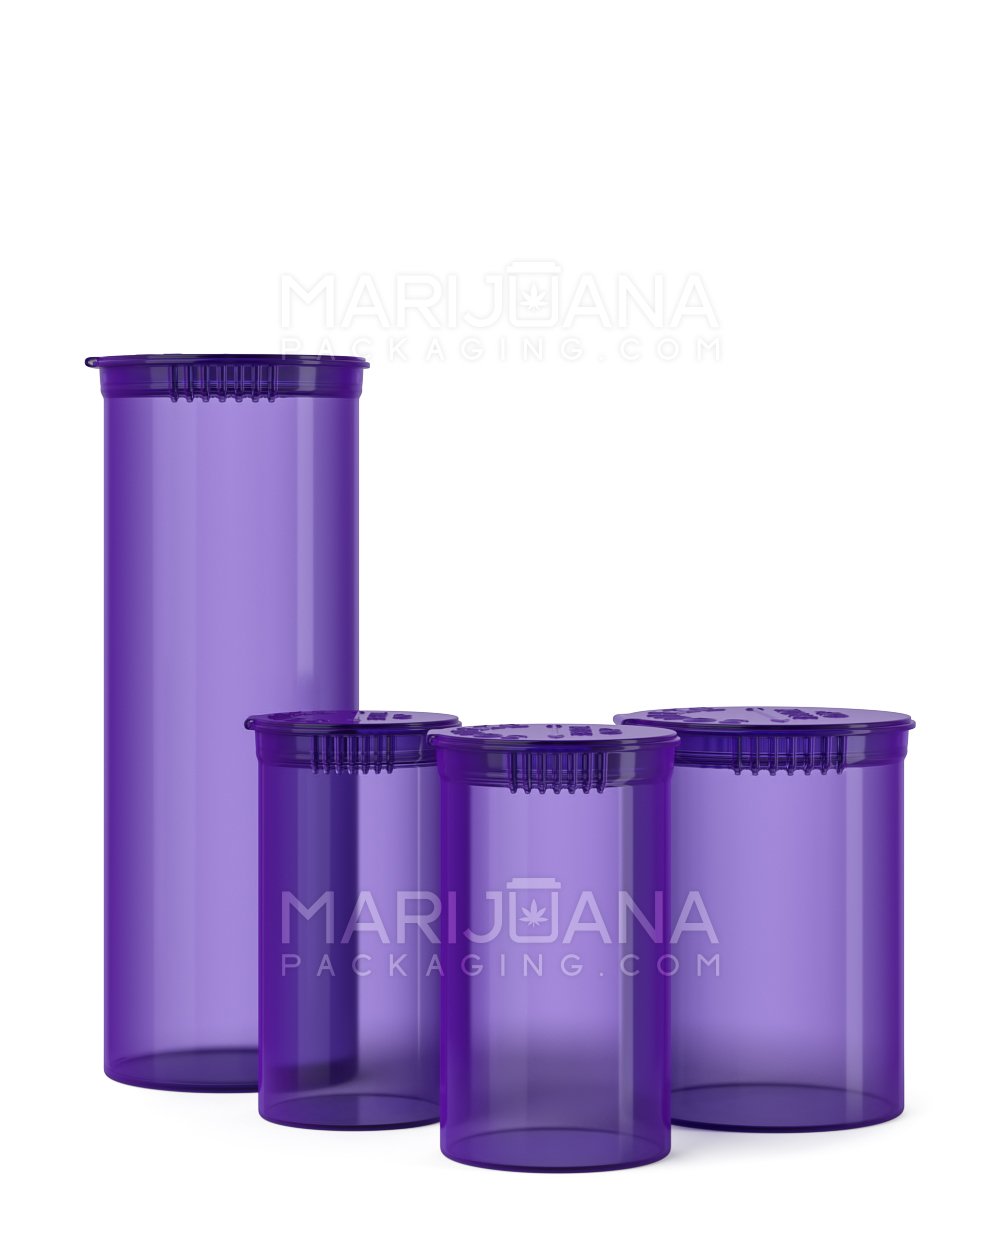 Child Resistant | Transparent Purple Pop Top Bottles | 19dr - 3.5g - 225 Count - 5